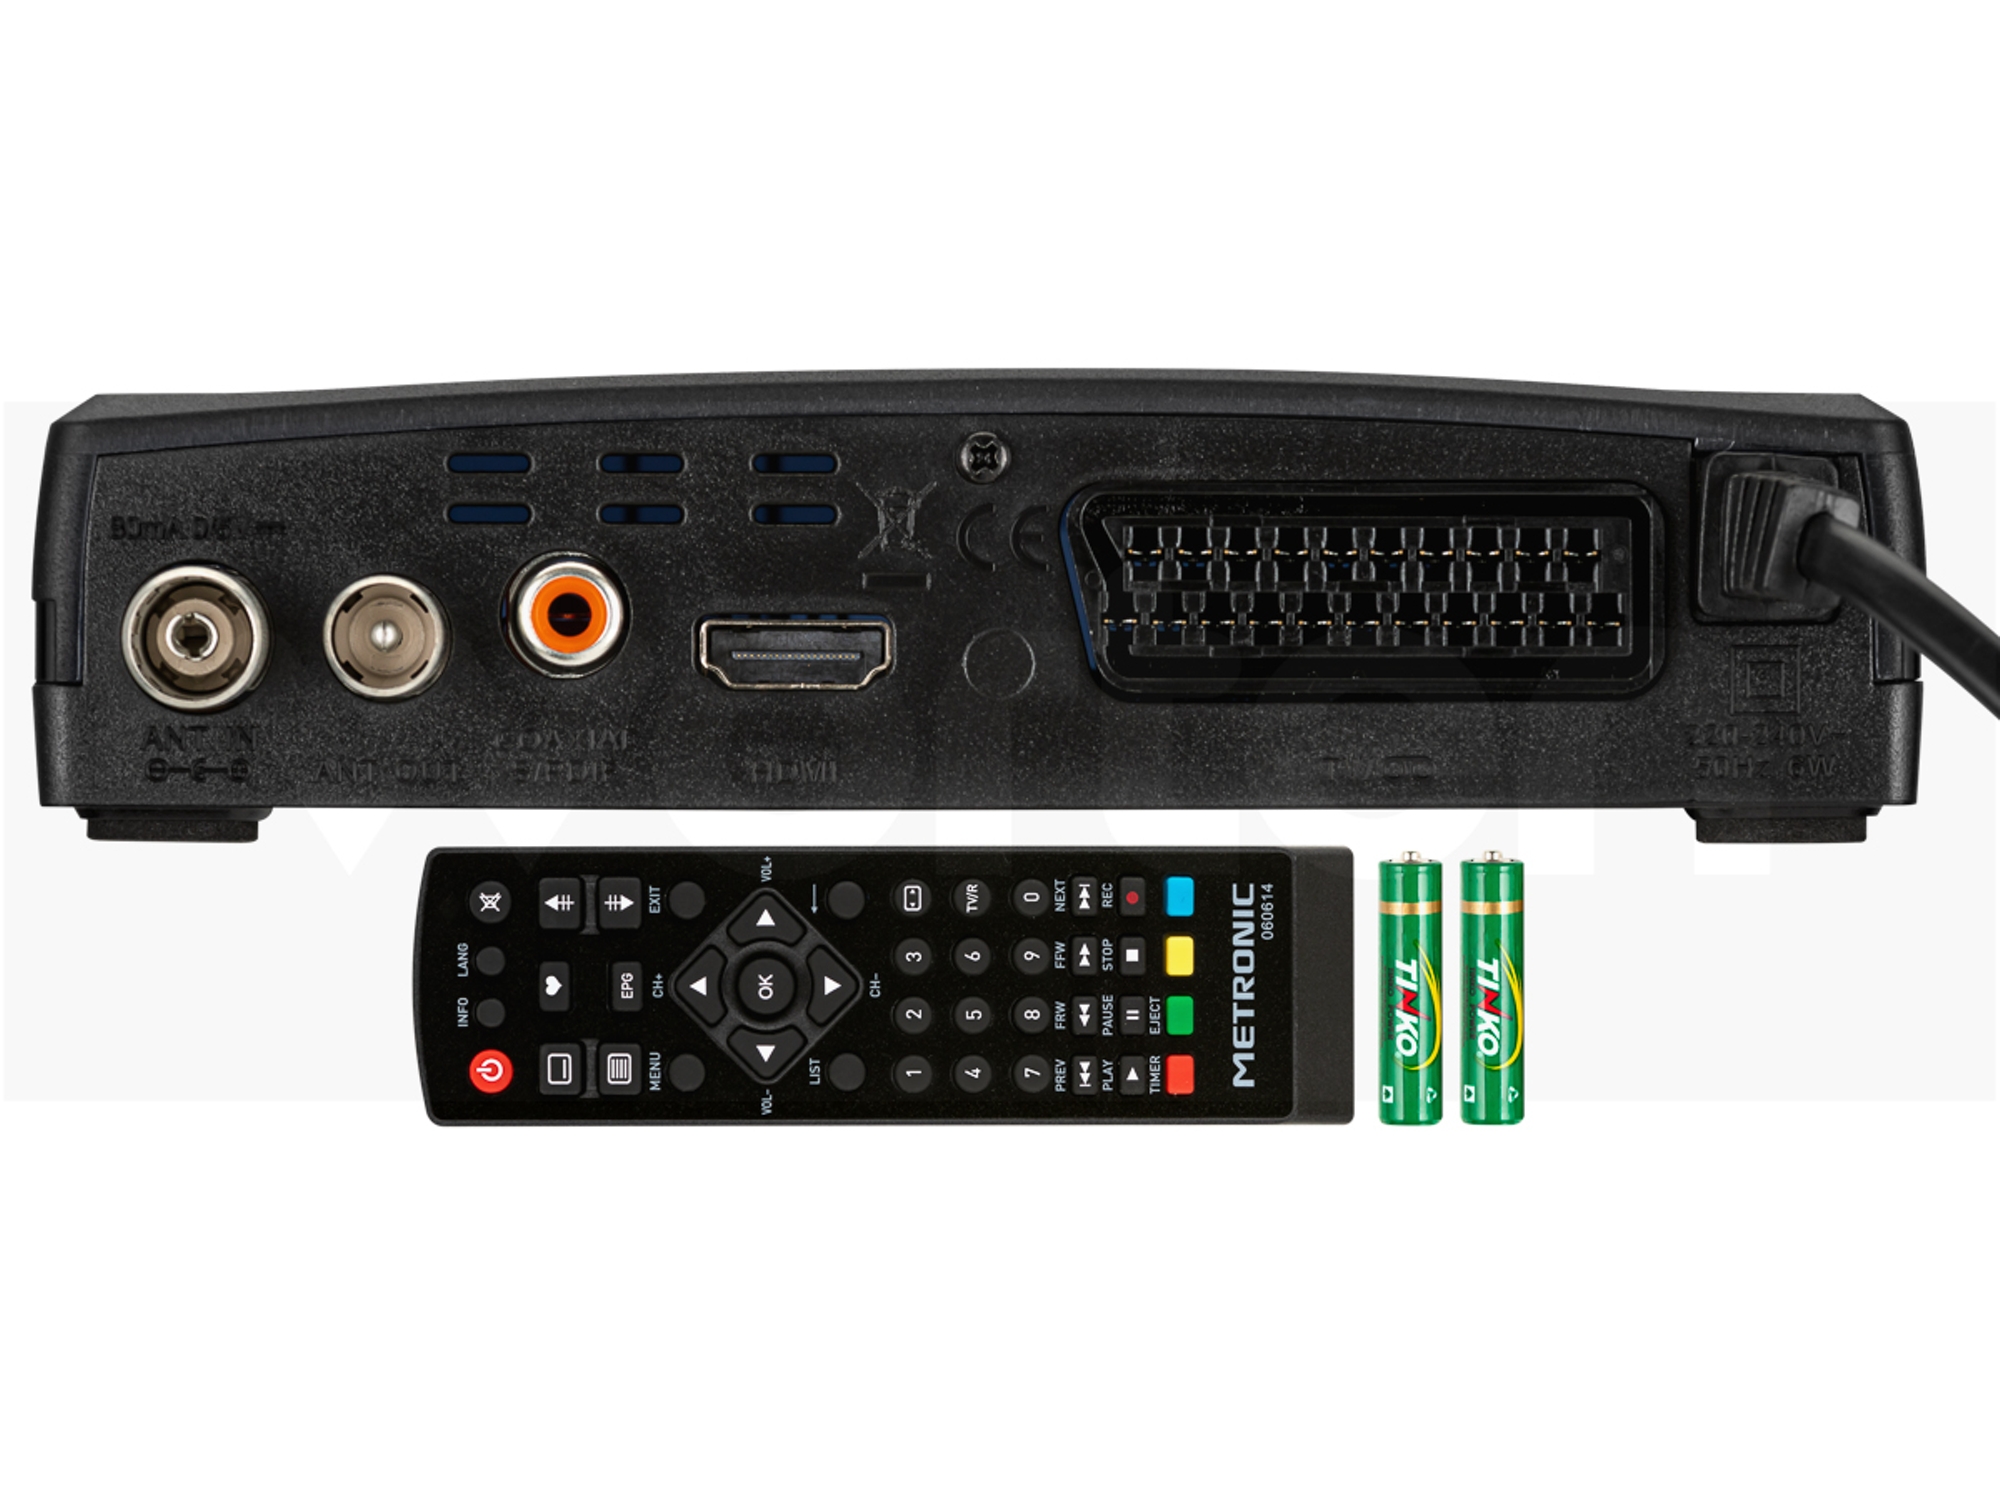 Receptor TDT HD USB PVR HDMI Metronic 441615